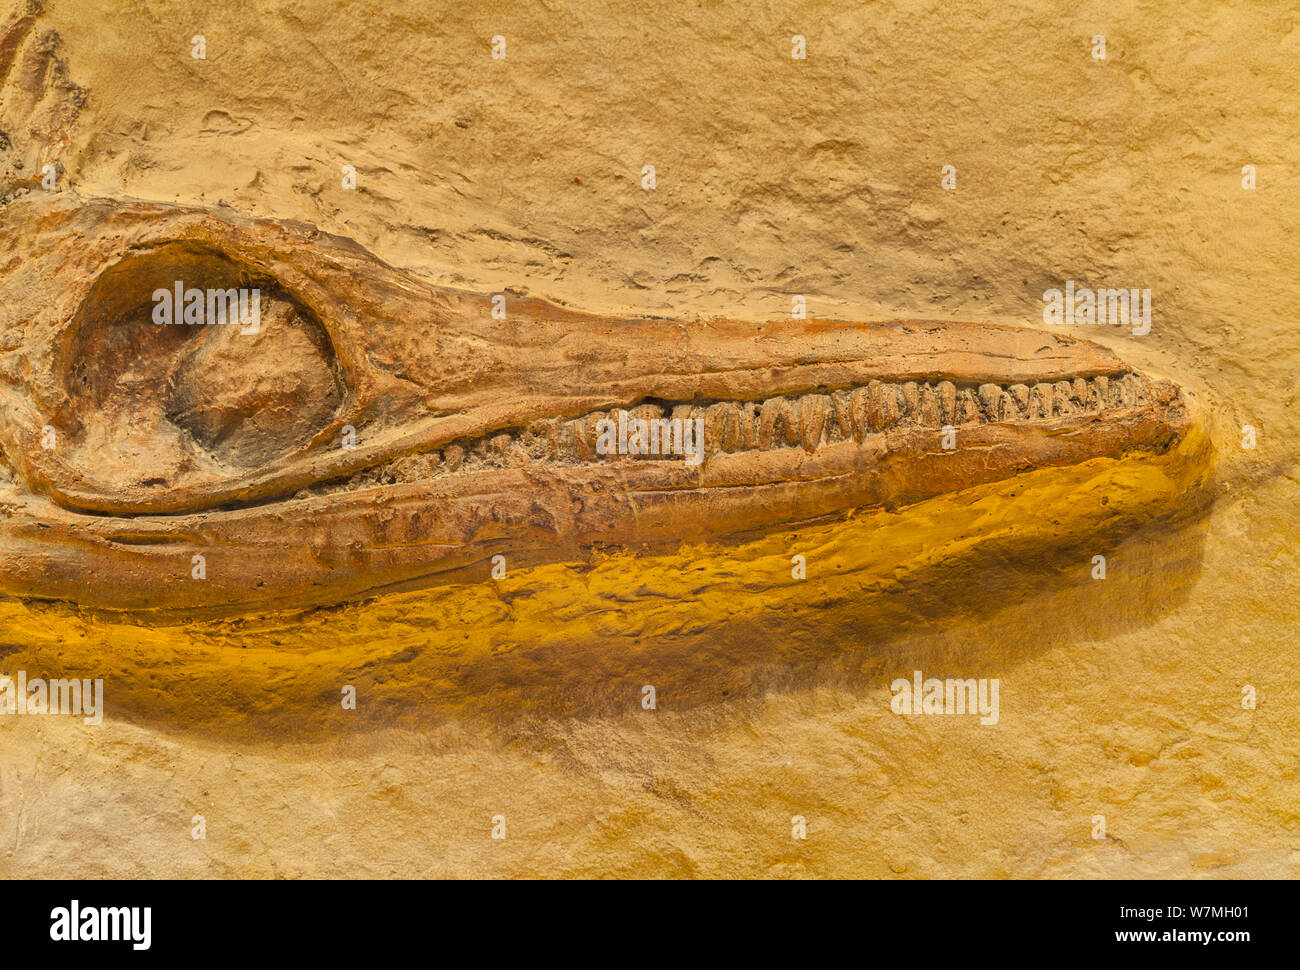 Restos fósiles de reptiles marinos prehistóricos plesiosaurio (Plesiosauria) mostrando el cráneo, mandíbulas, ojos y dientes, España Foto de stock